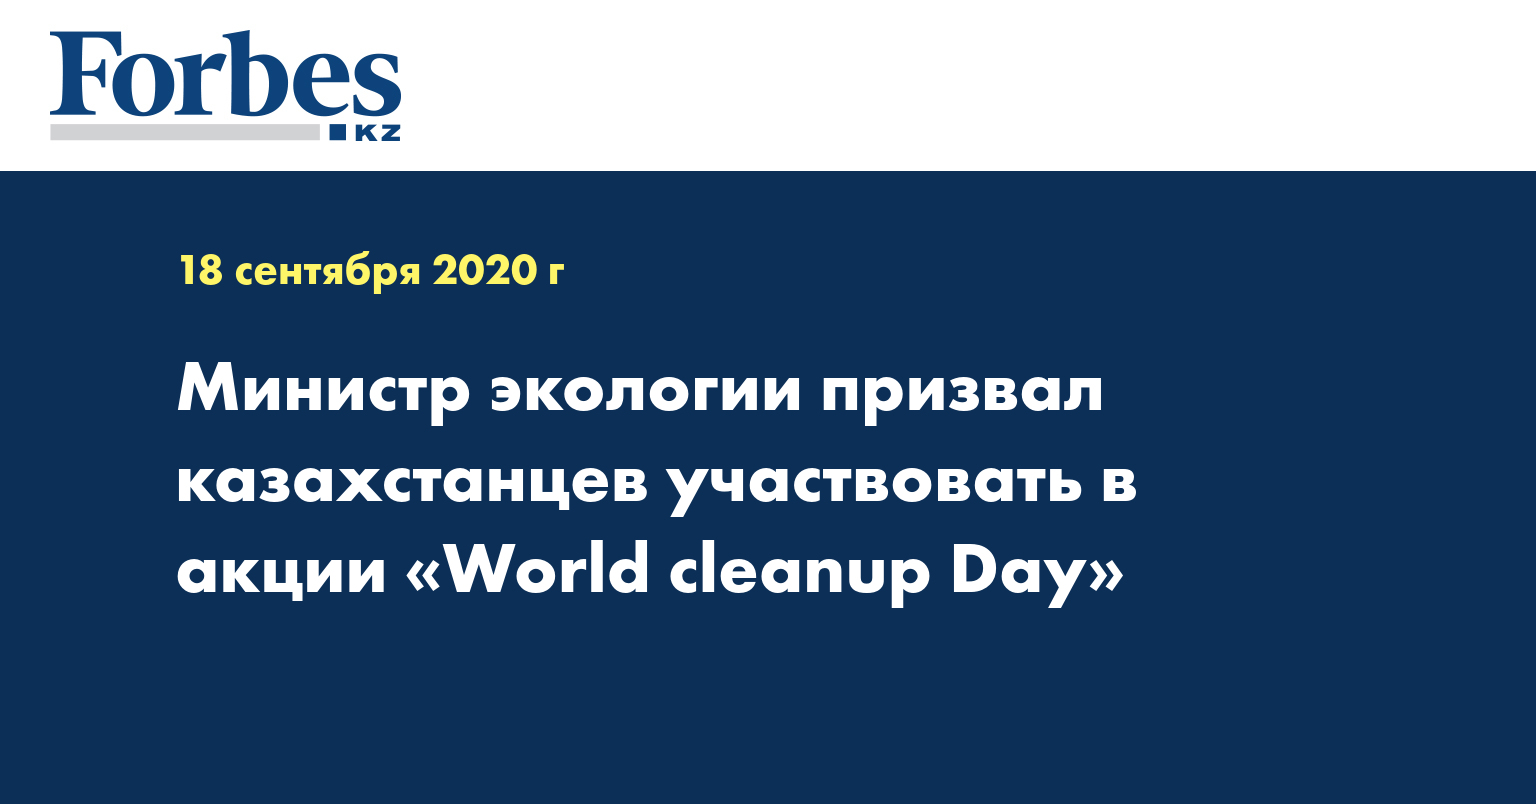 Министр экологии призвал казахстанцев участвовать в акции «World cleanup Day»  